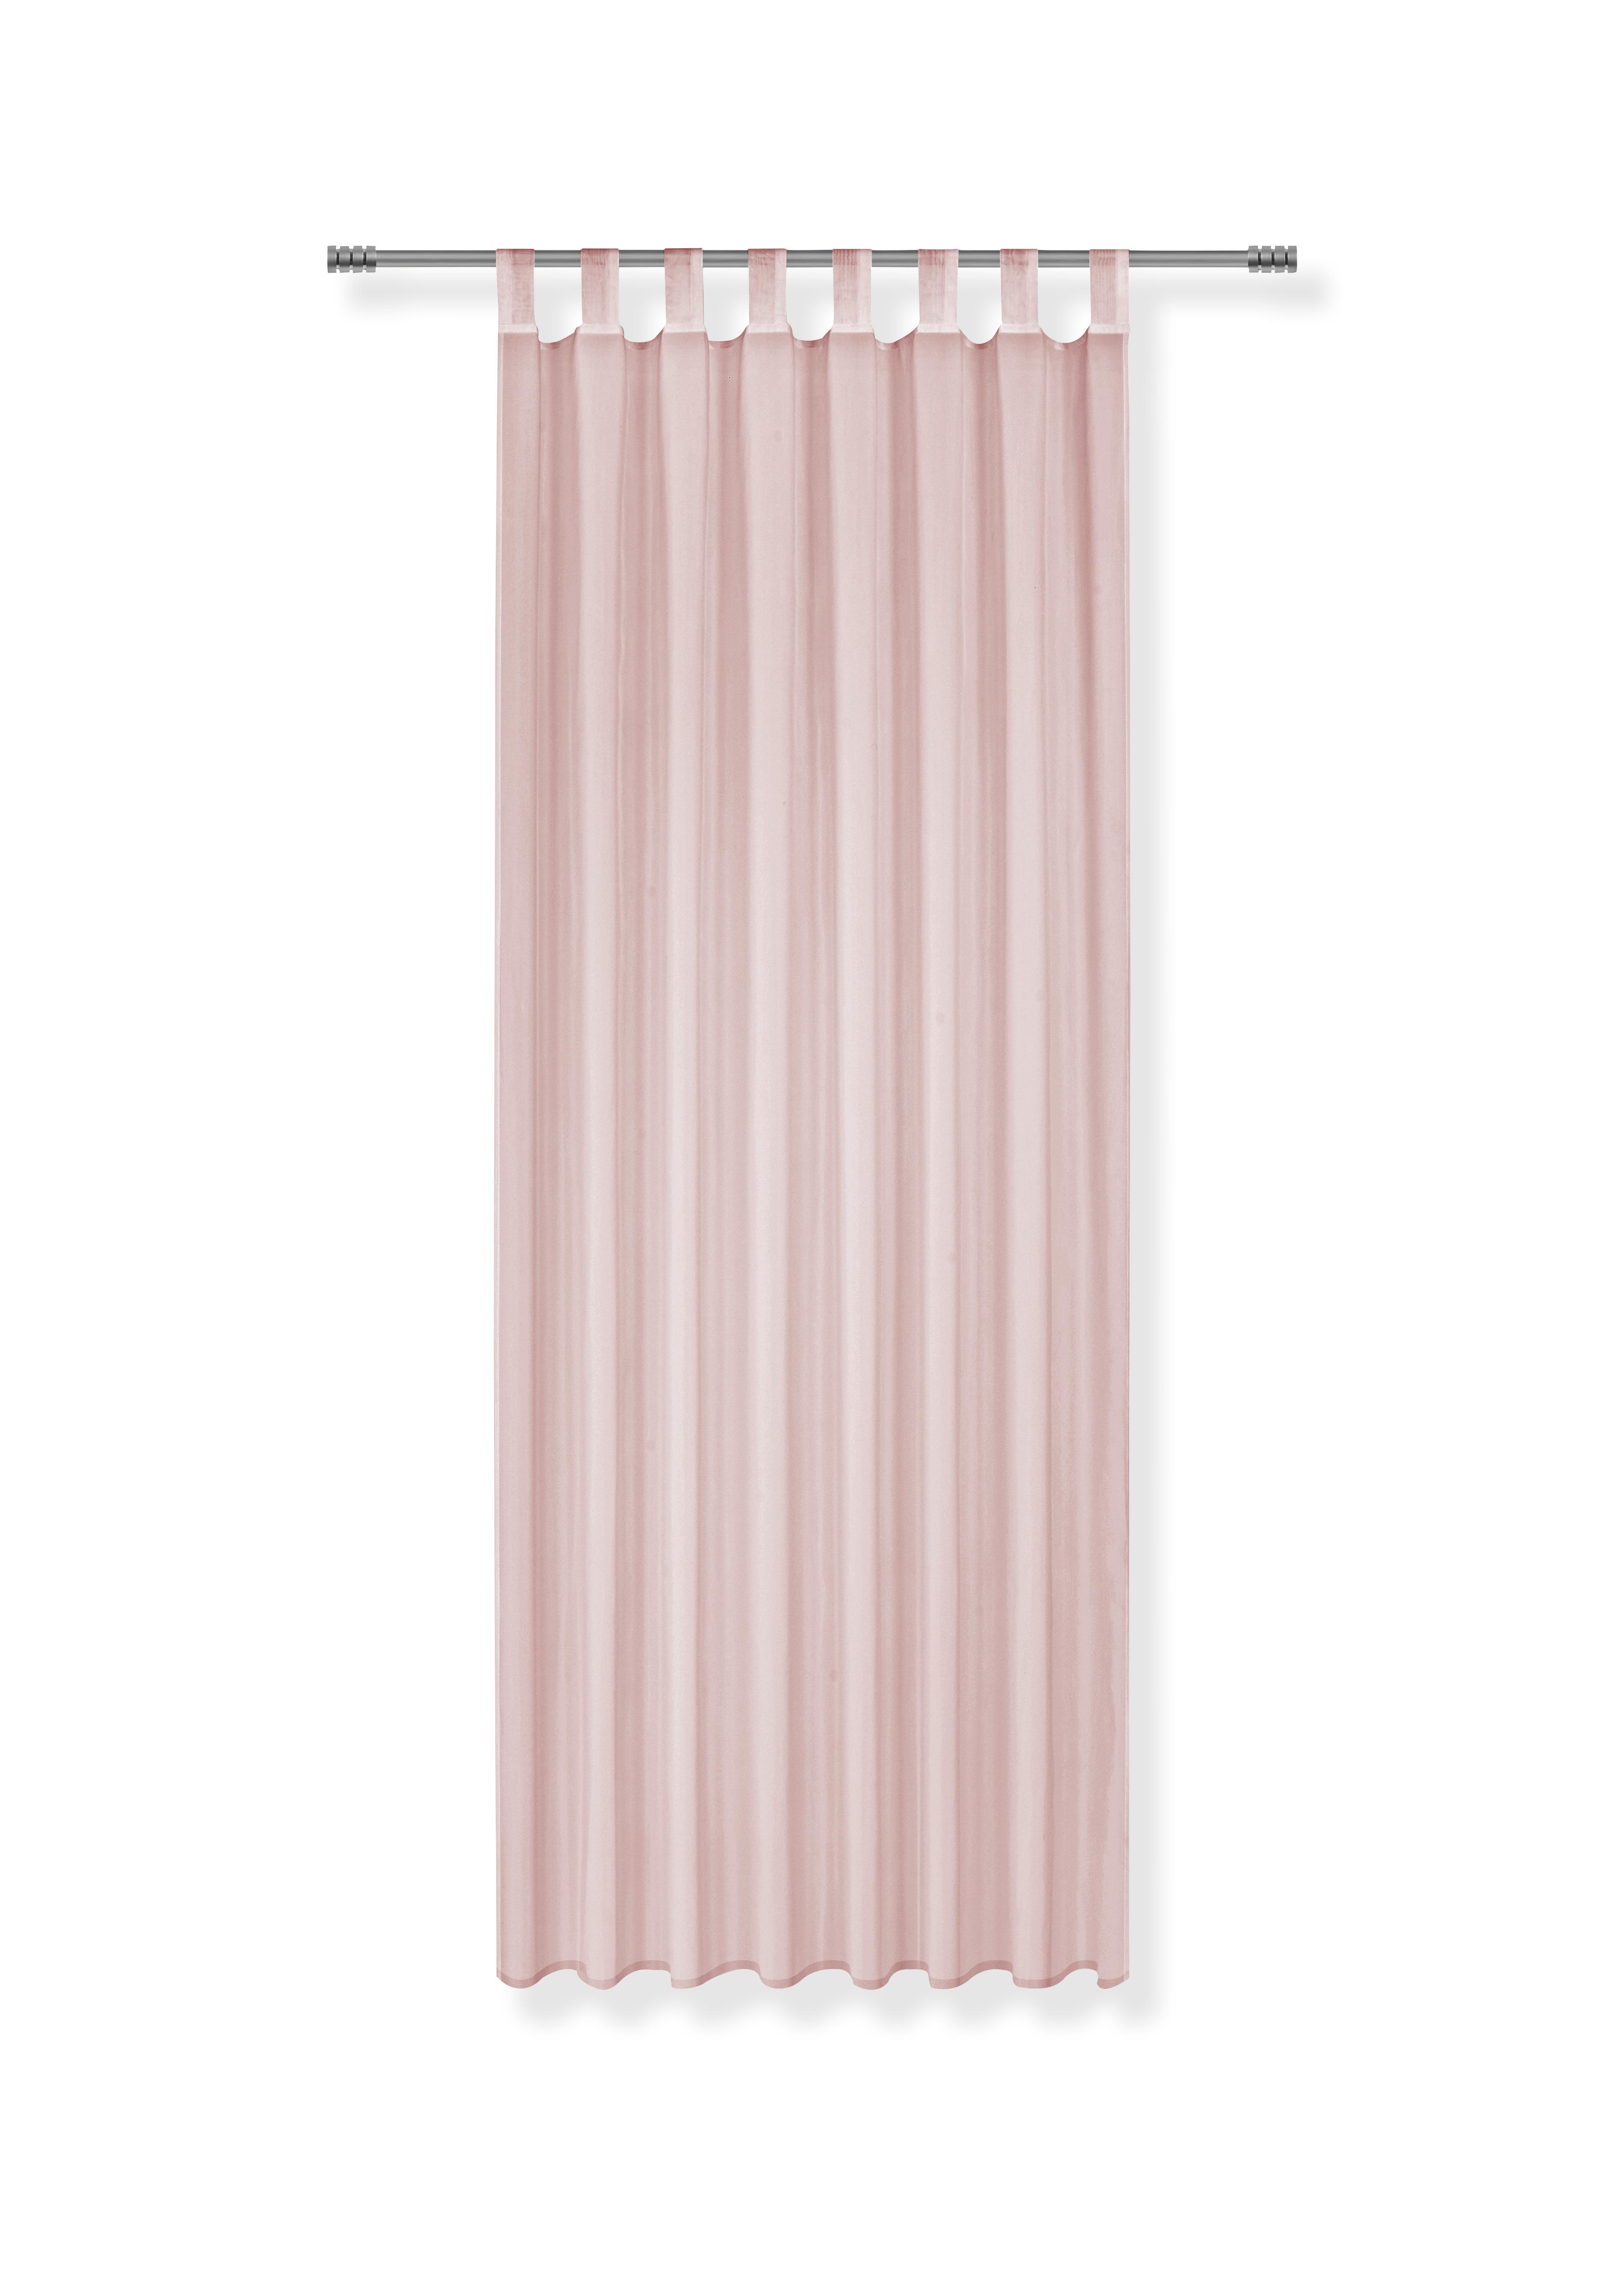 Záves S Pútkami Hanna 2ks-Cen. Trhák,140/245cm - ružová, textil (140/245cm) - Based